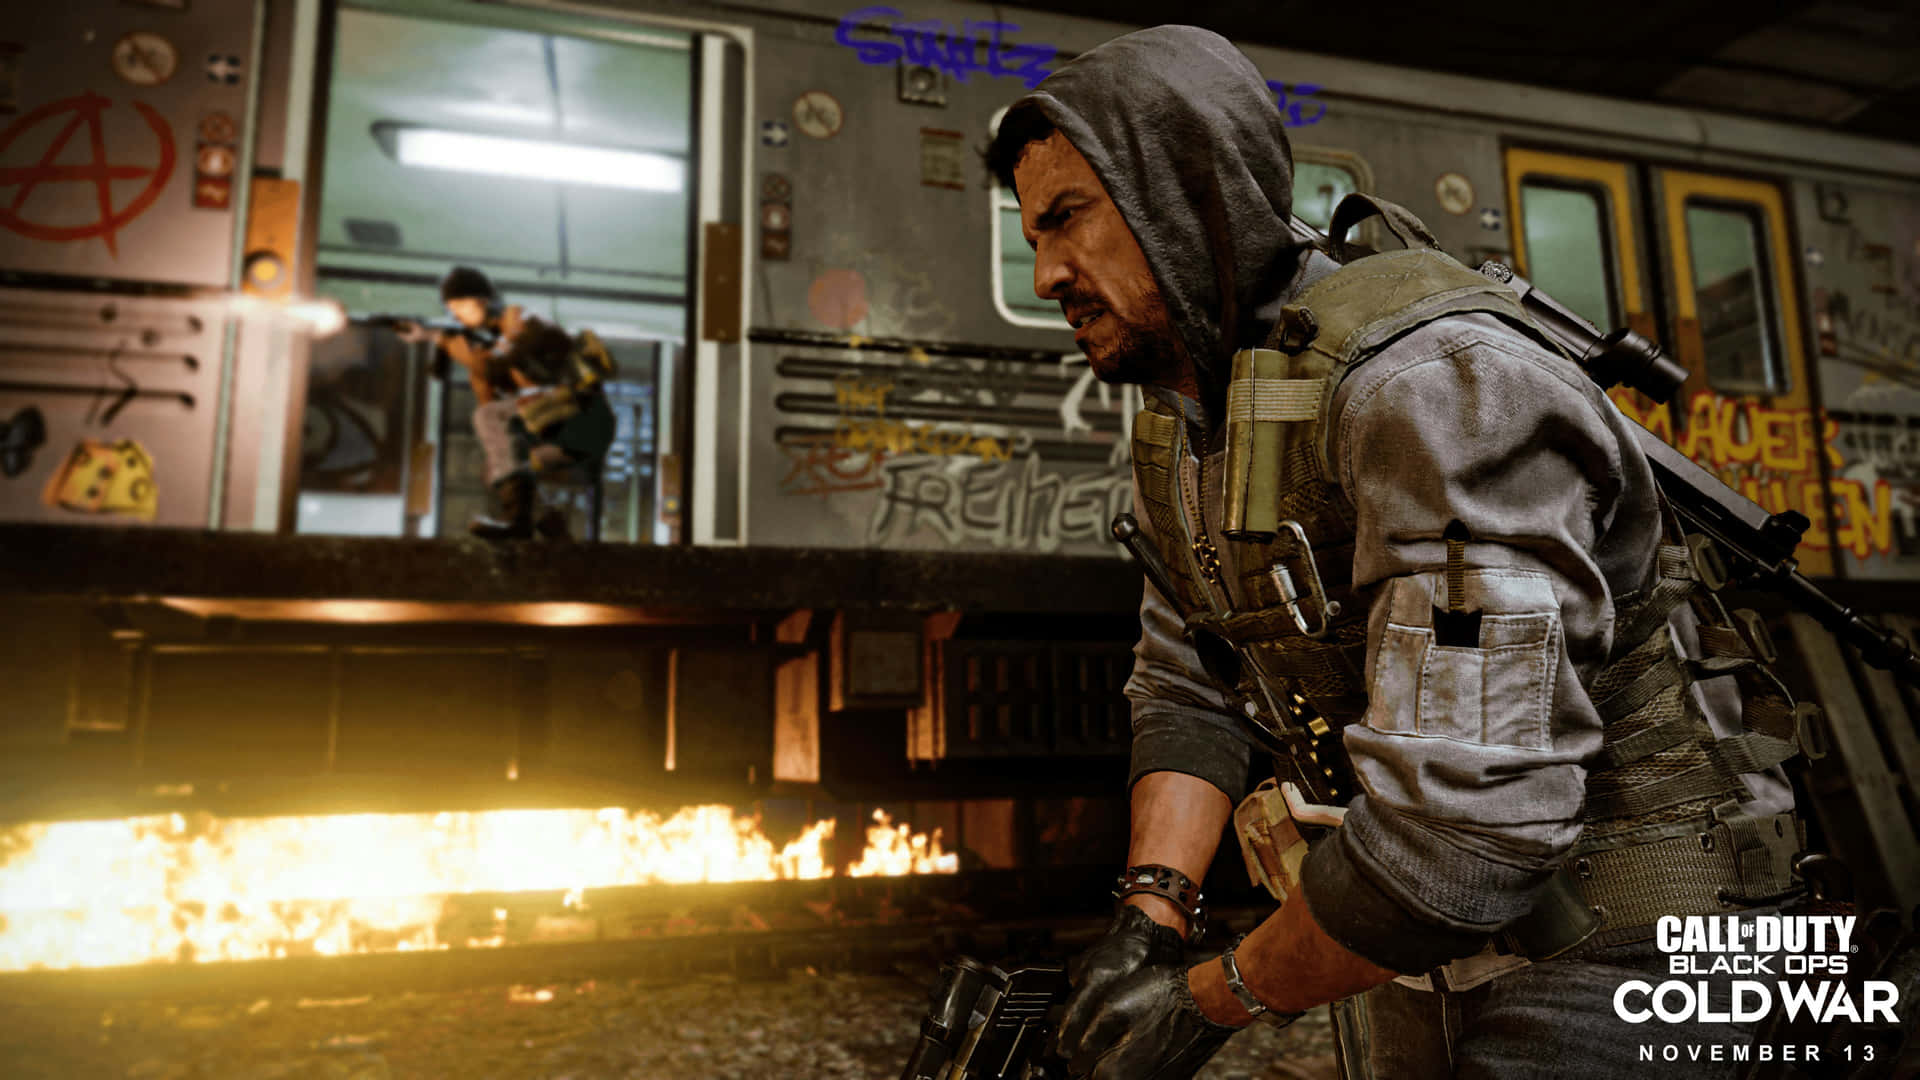 Hochauflösendeshintergrundbild Von Mendo Garcia Für Call Of Duty Black Ops Cold War